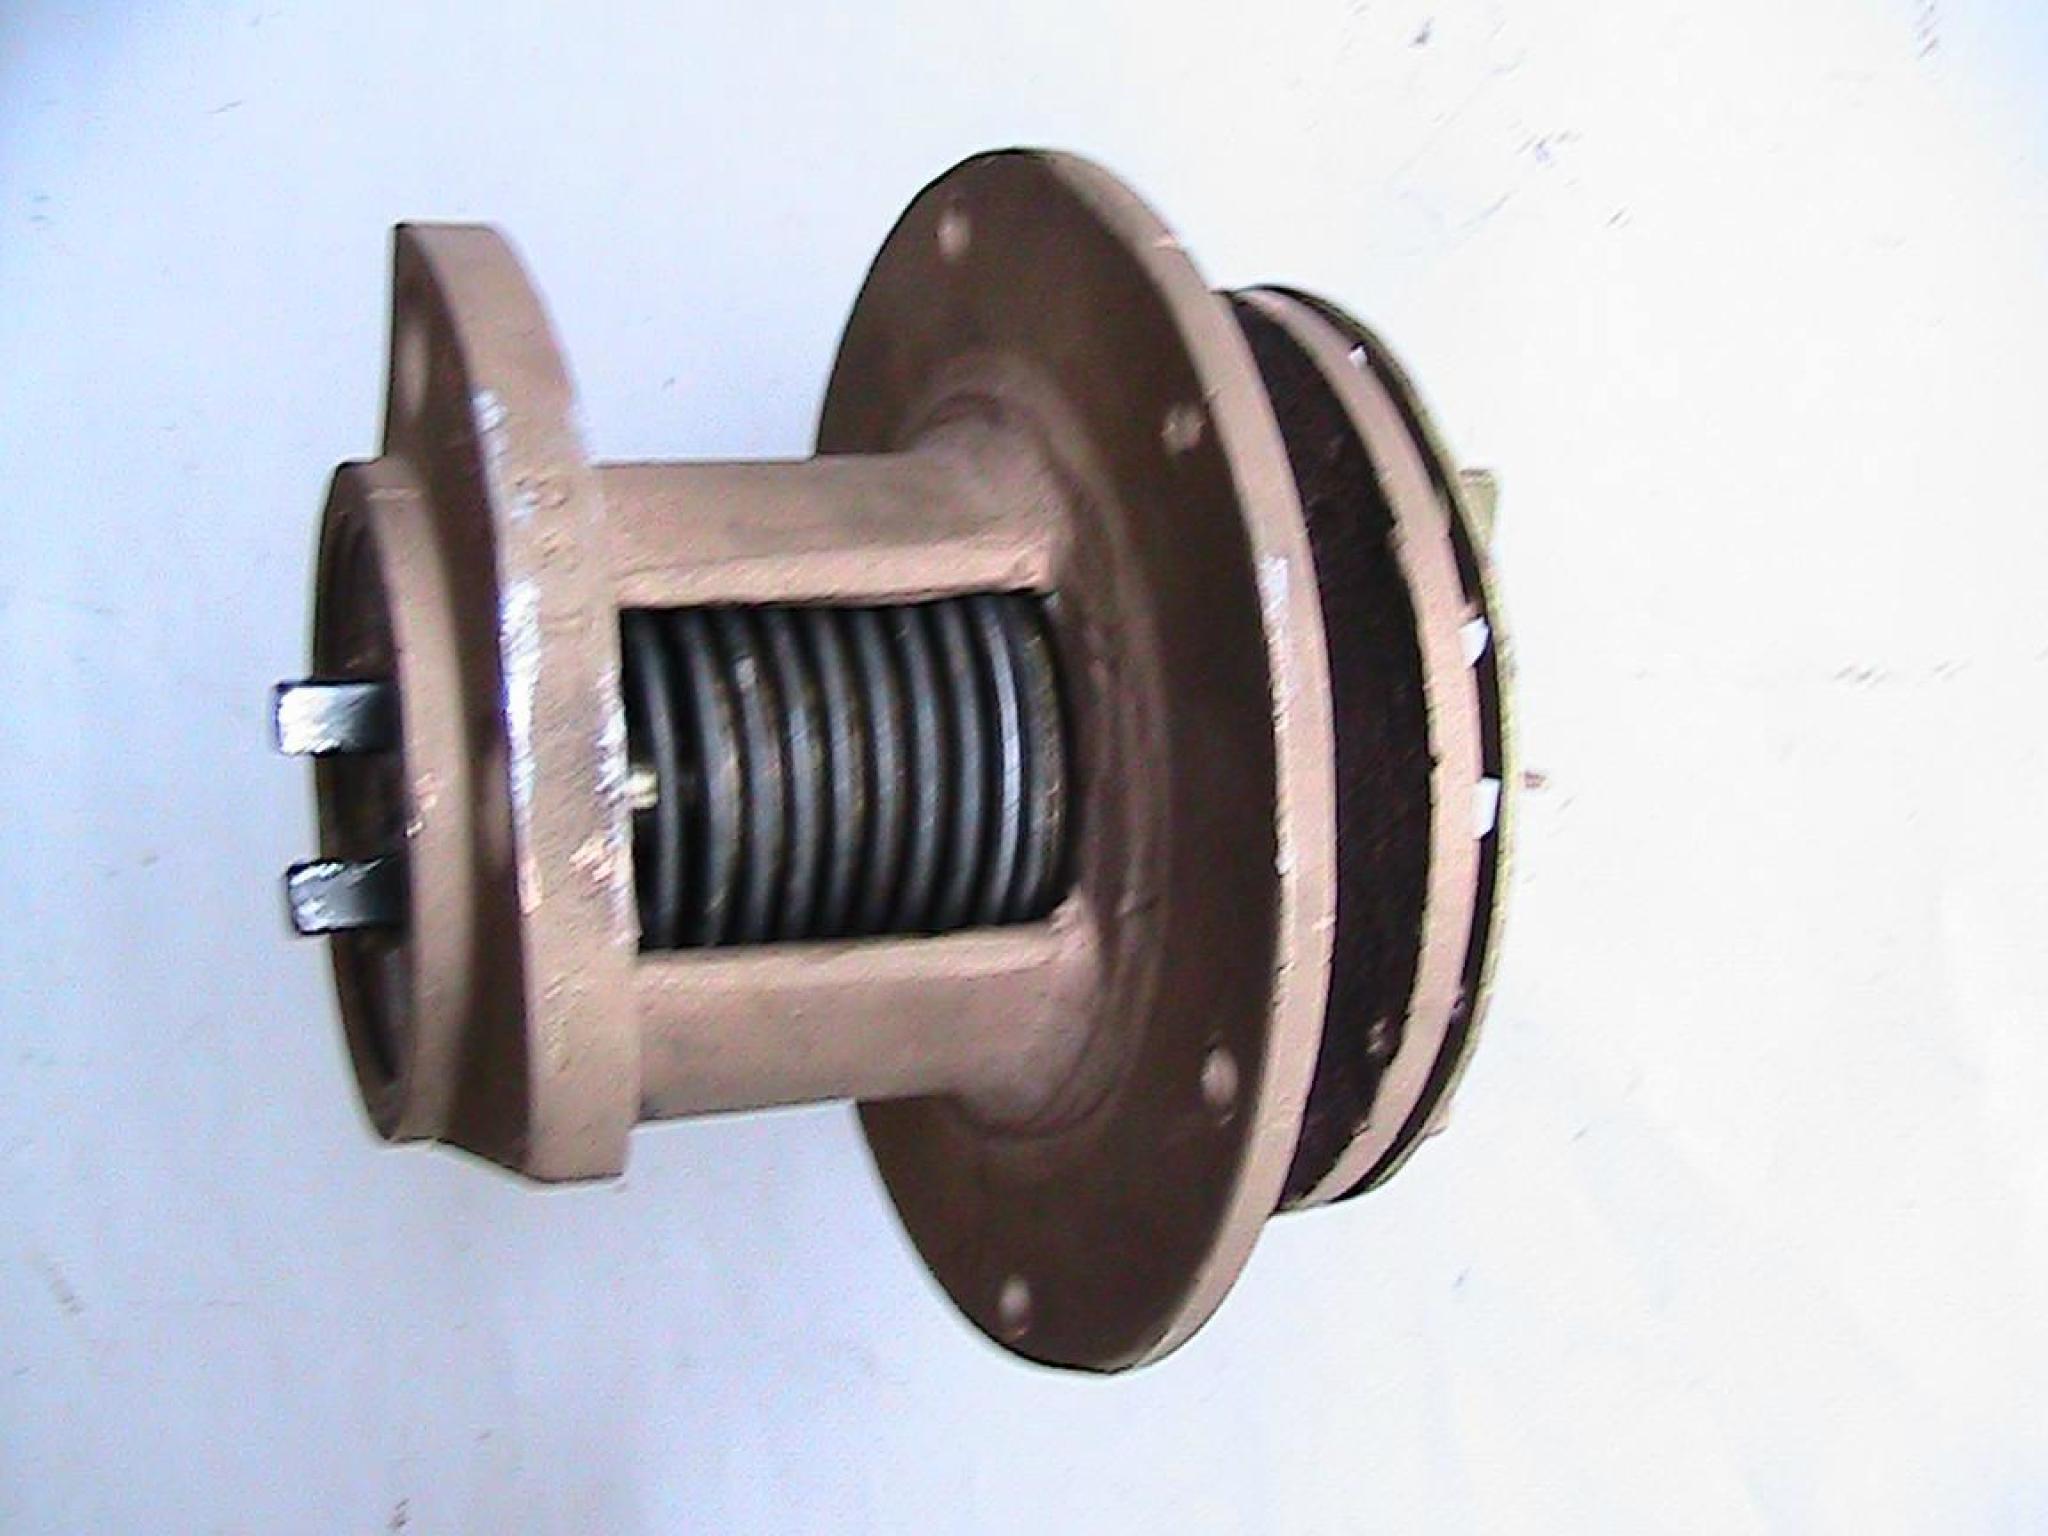 PANHARD LEVASSOR pompe modifier avec système d'étanchéité par garniture mécanique et axe sur roulement.